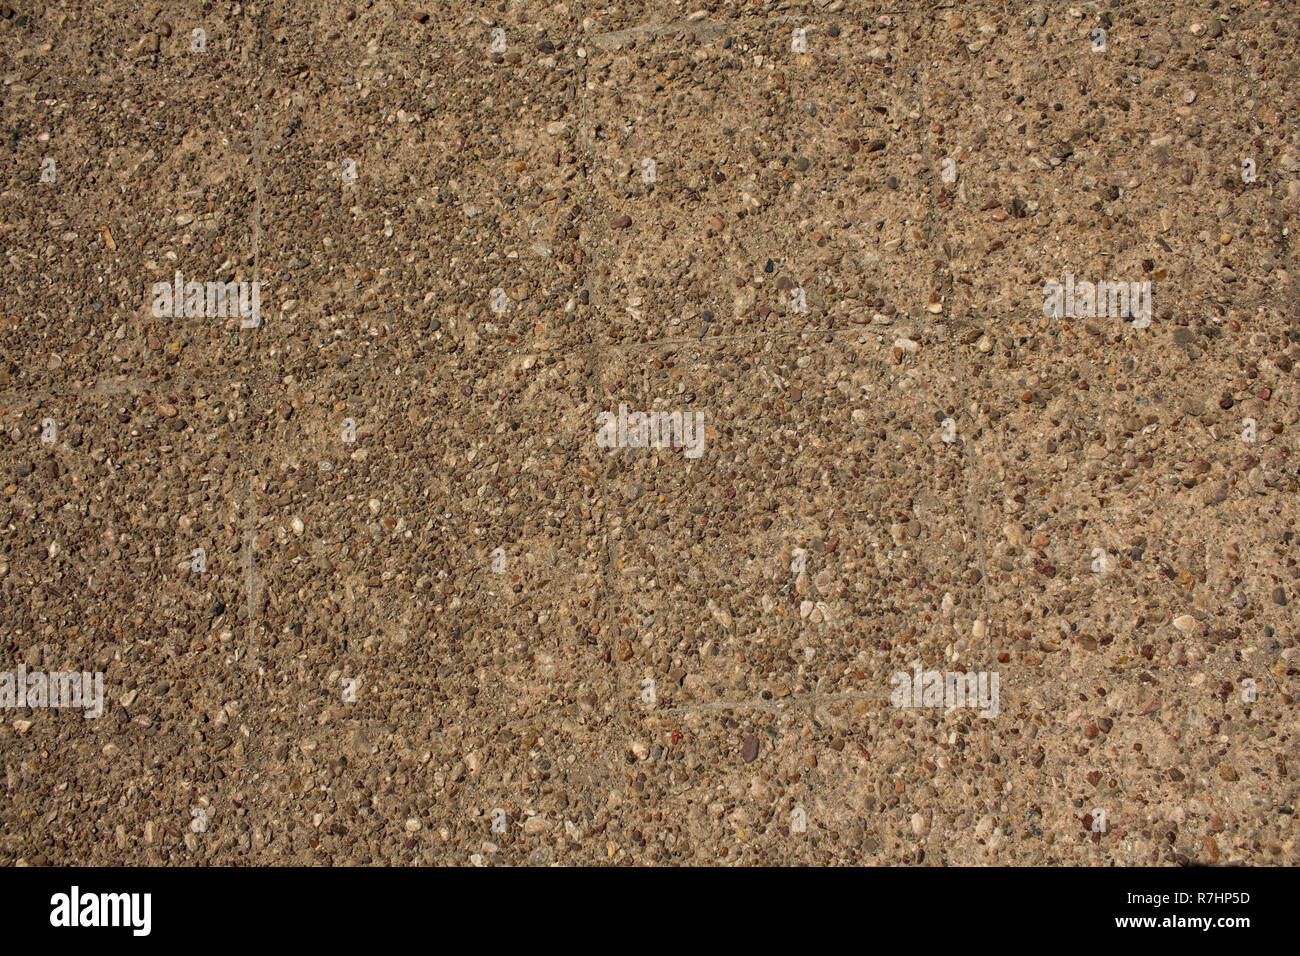 Rough beige concrete surface. Stock Photo